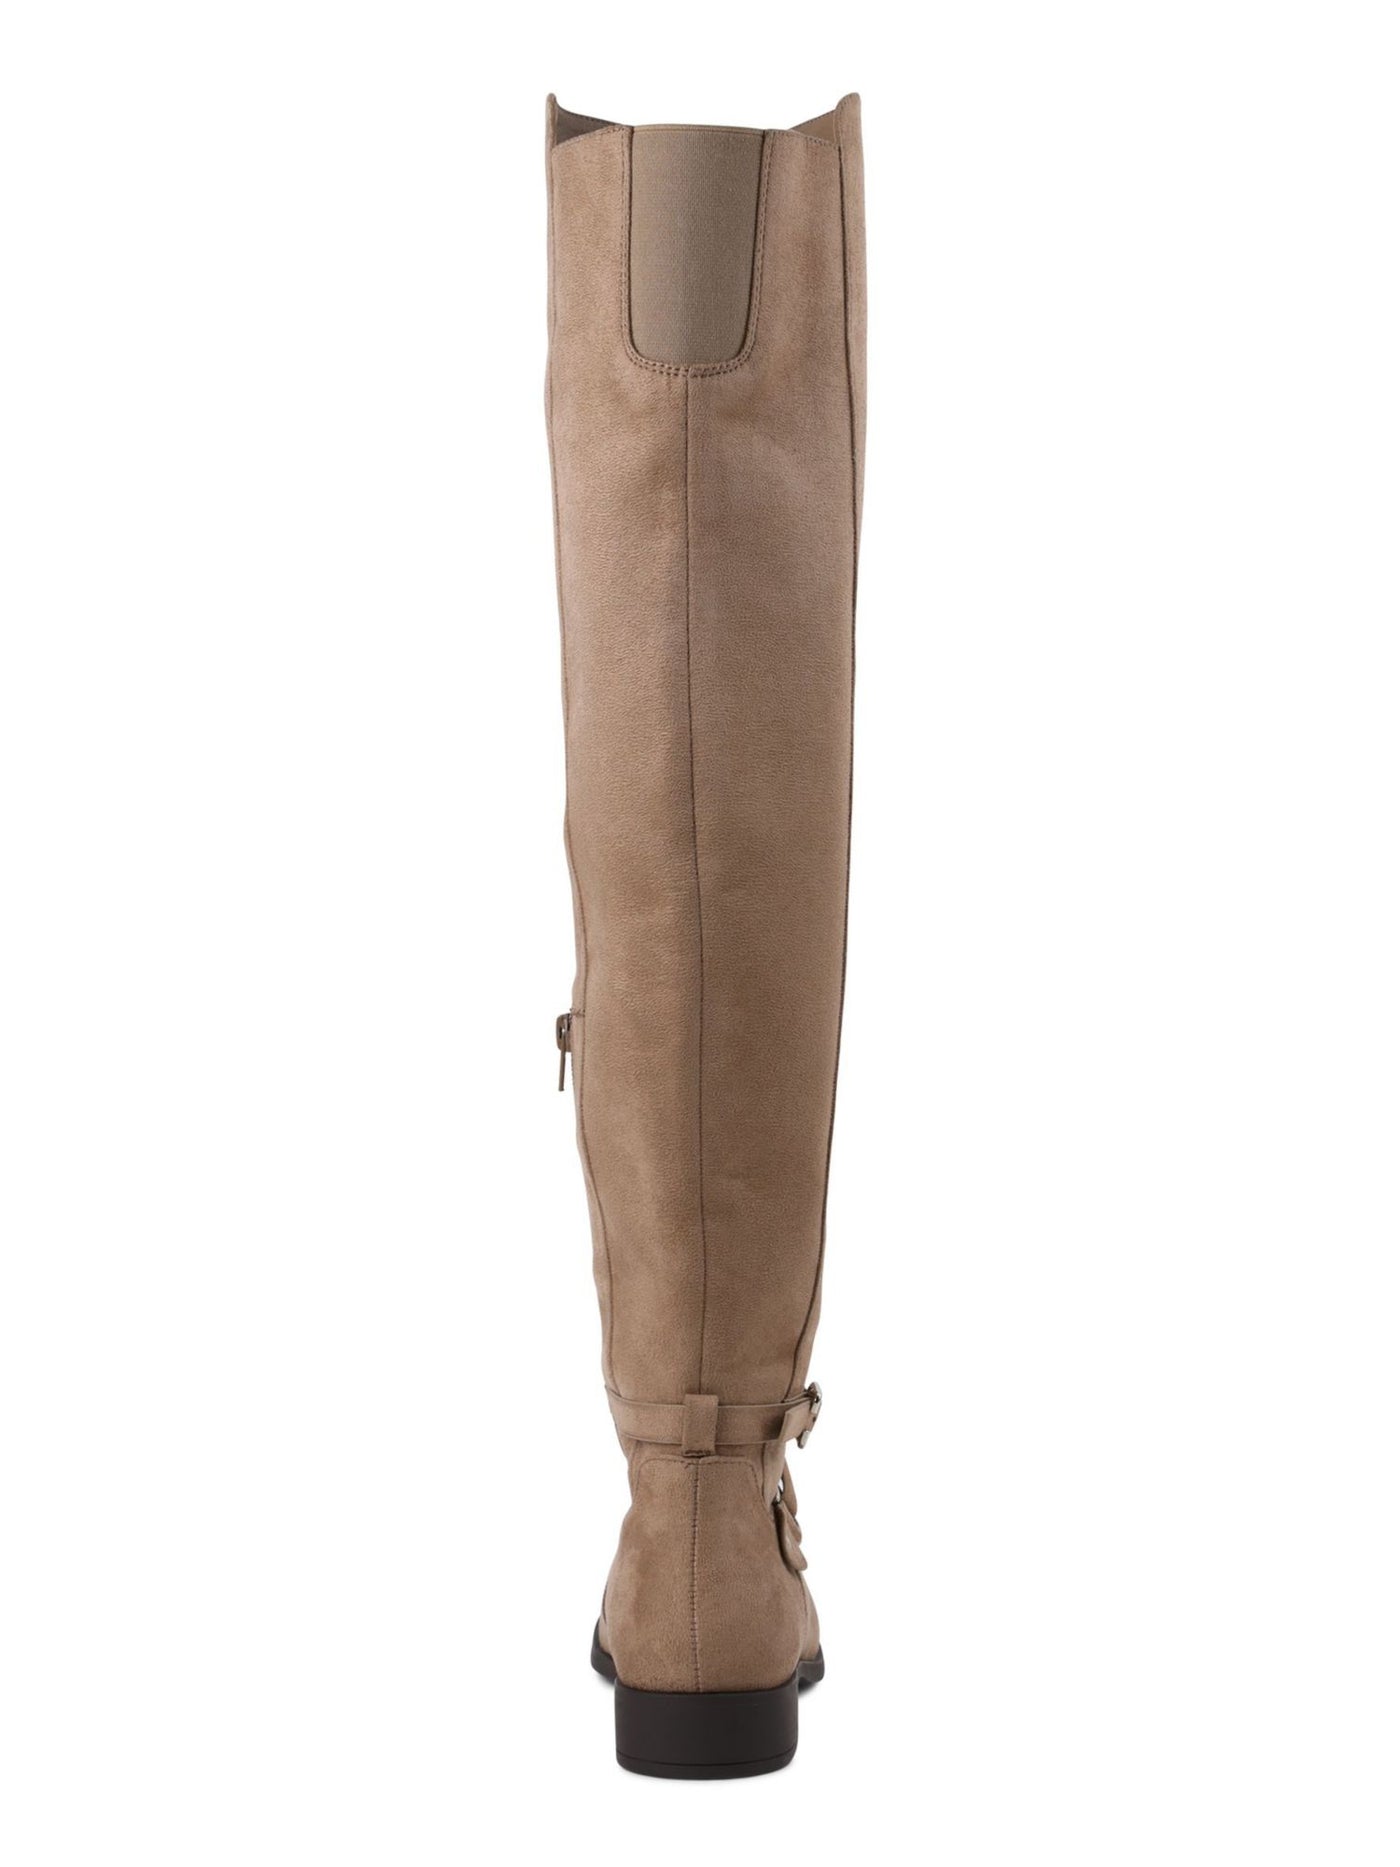 XOXO Womens Beige Goring Buckle Accent Comfort Thames Round Toe Block Heel Zip-Up Dress Boots 6 M